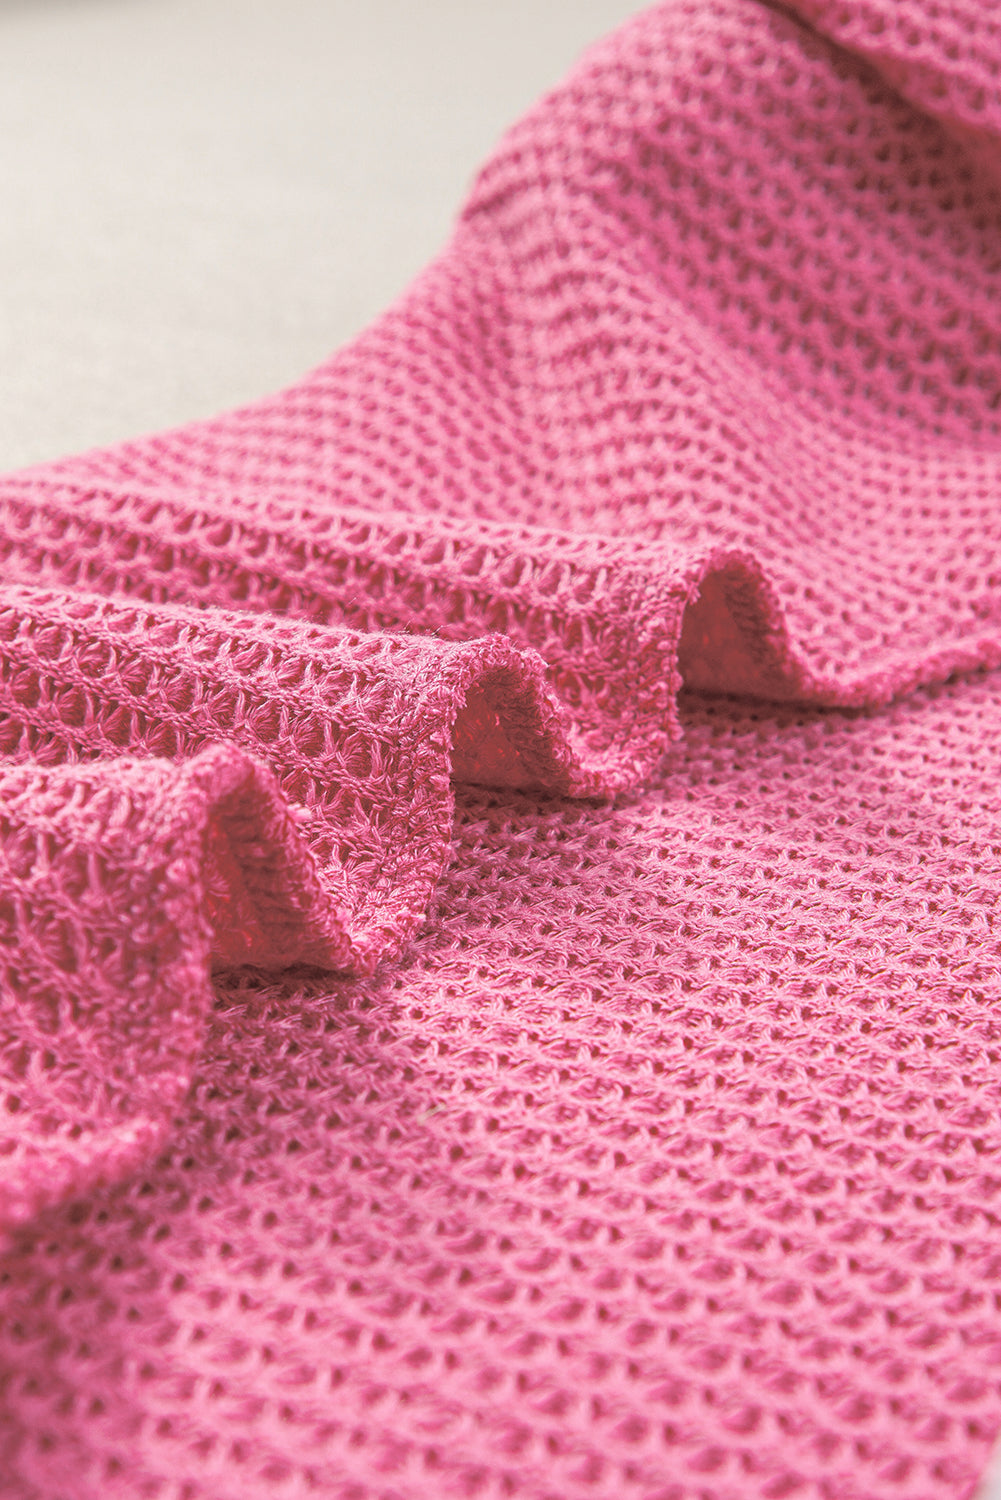 Svijetlo ružičasta majica s puf rukavima s naborima i pletenom bojom